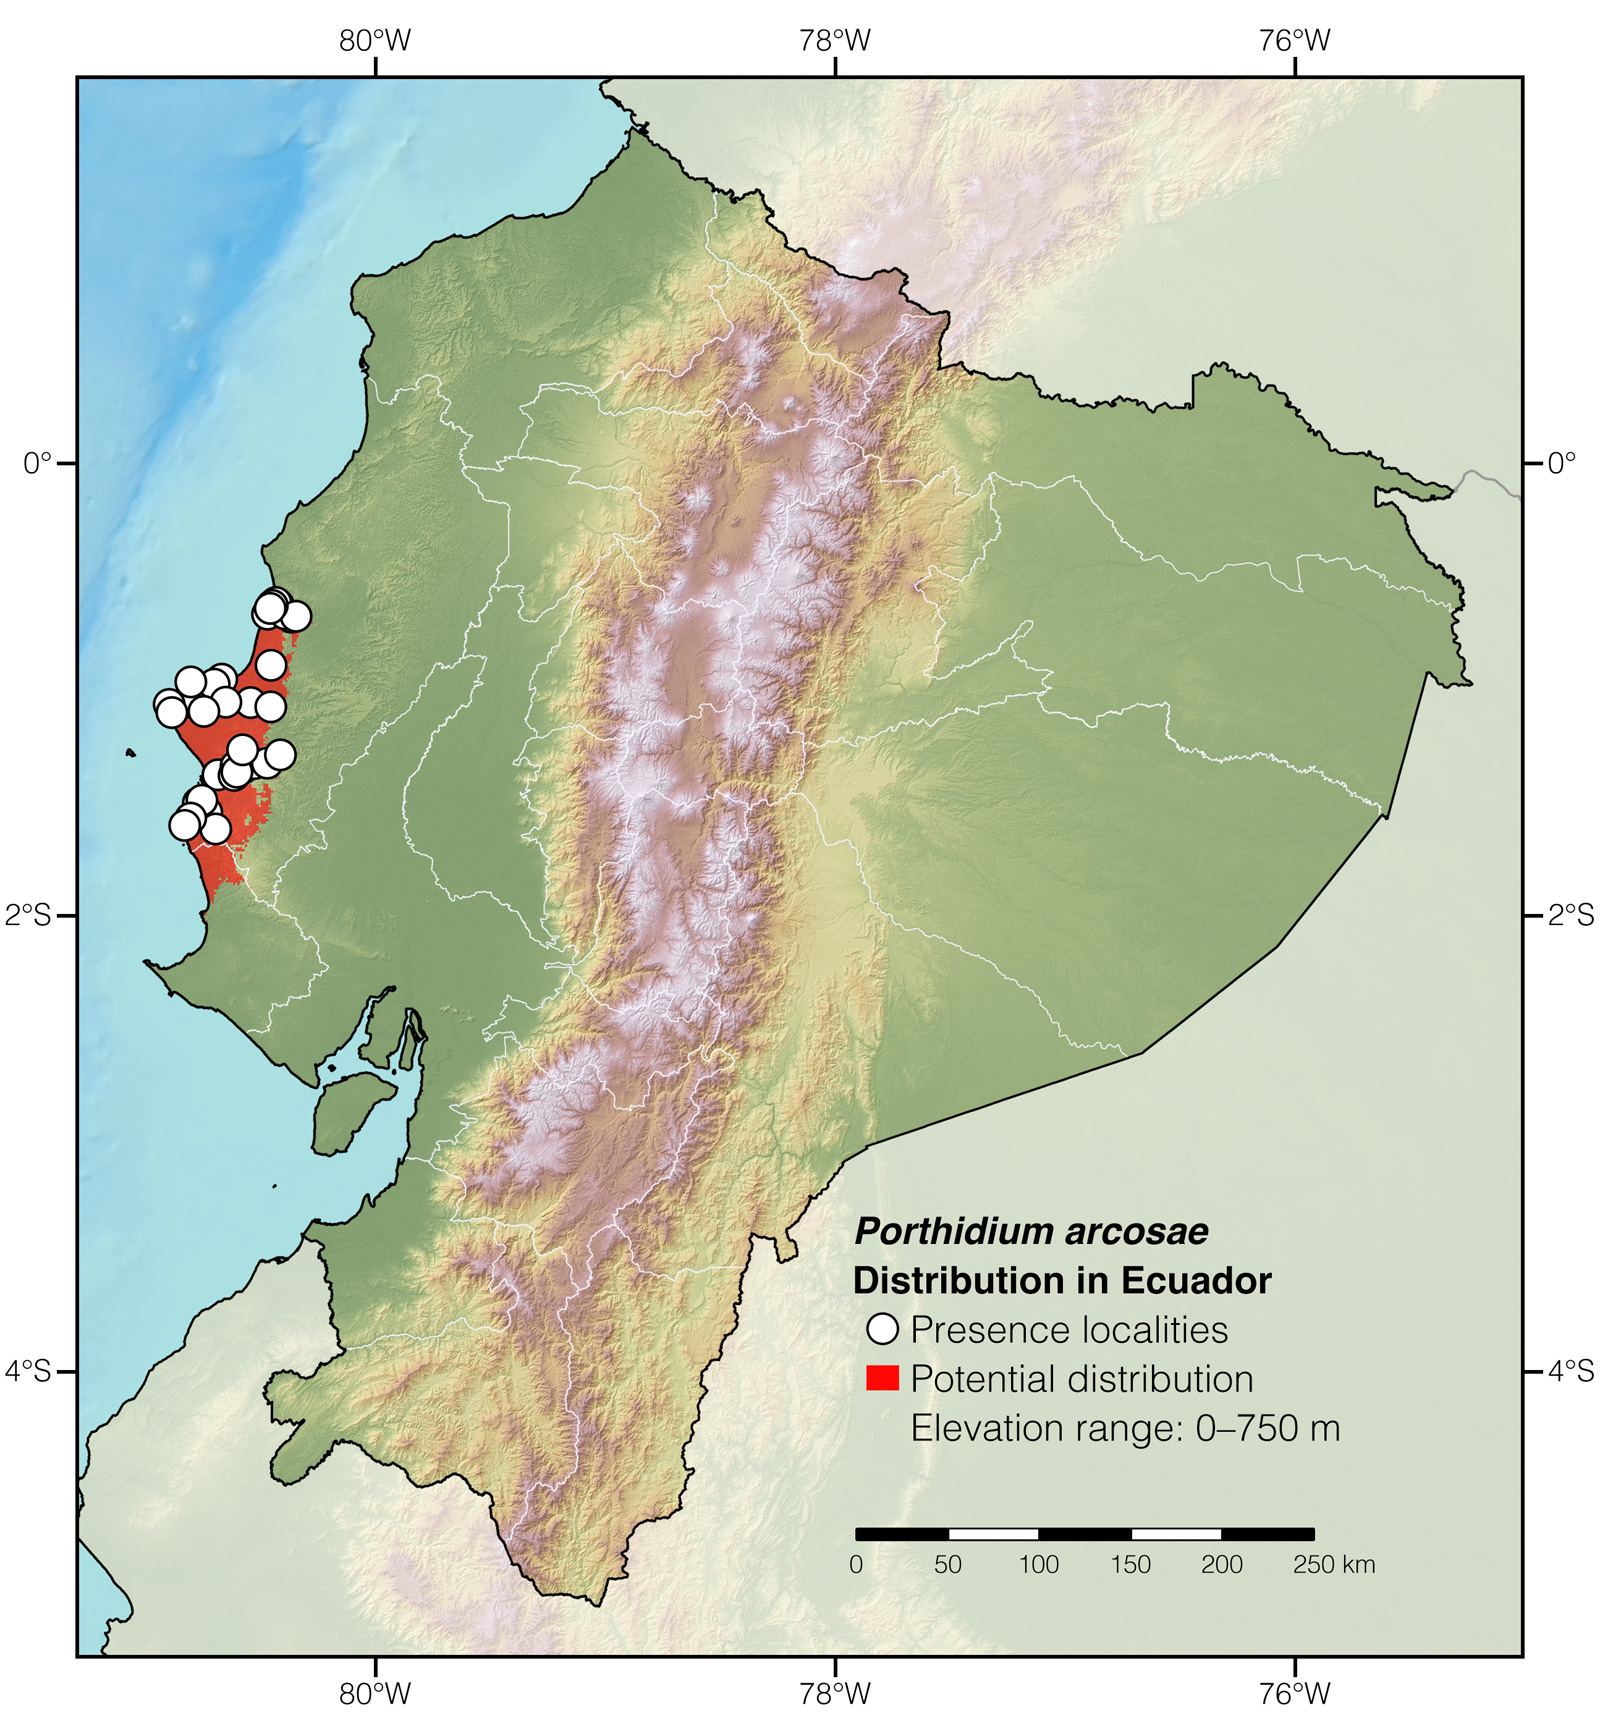 Distribution of Porthidium arcosae in Ecuador